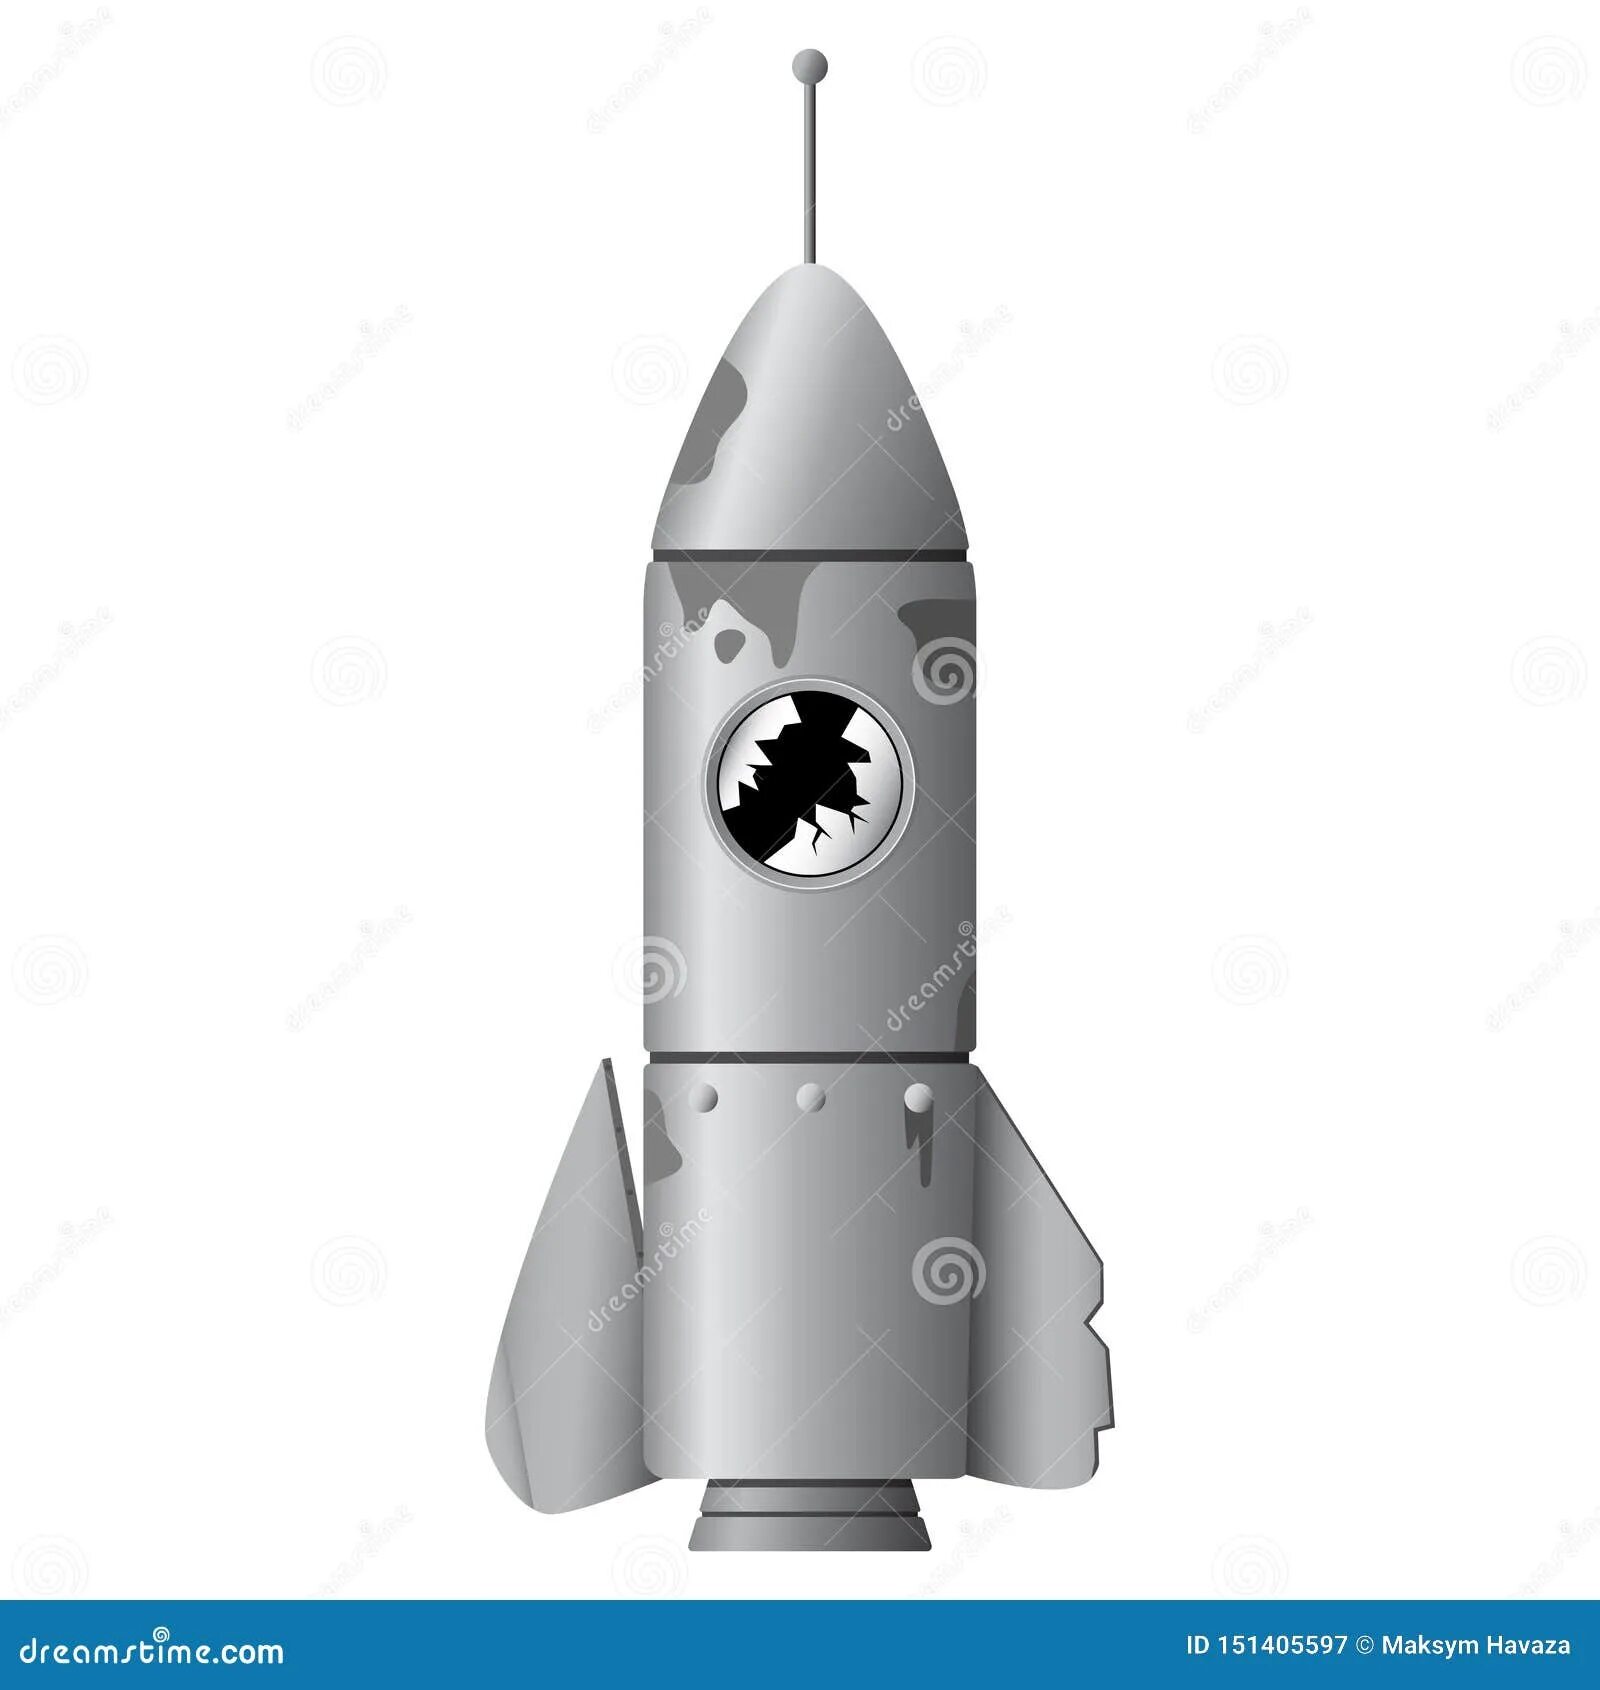 Поломанная ракета. Ракета сломалась. Иллюстрация ракета сломанная. Сломалась игрушка ракета.